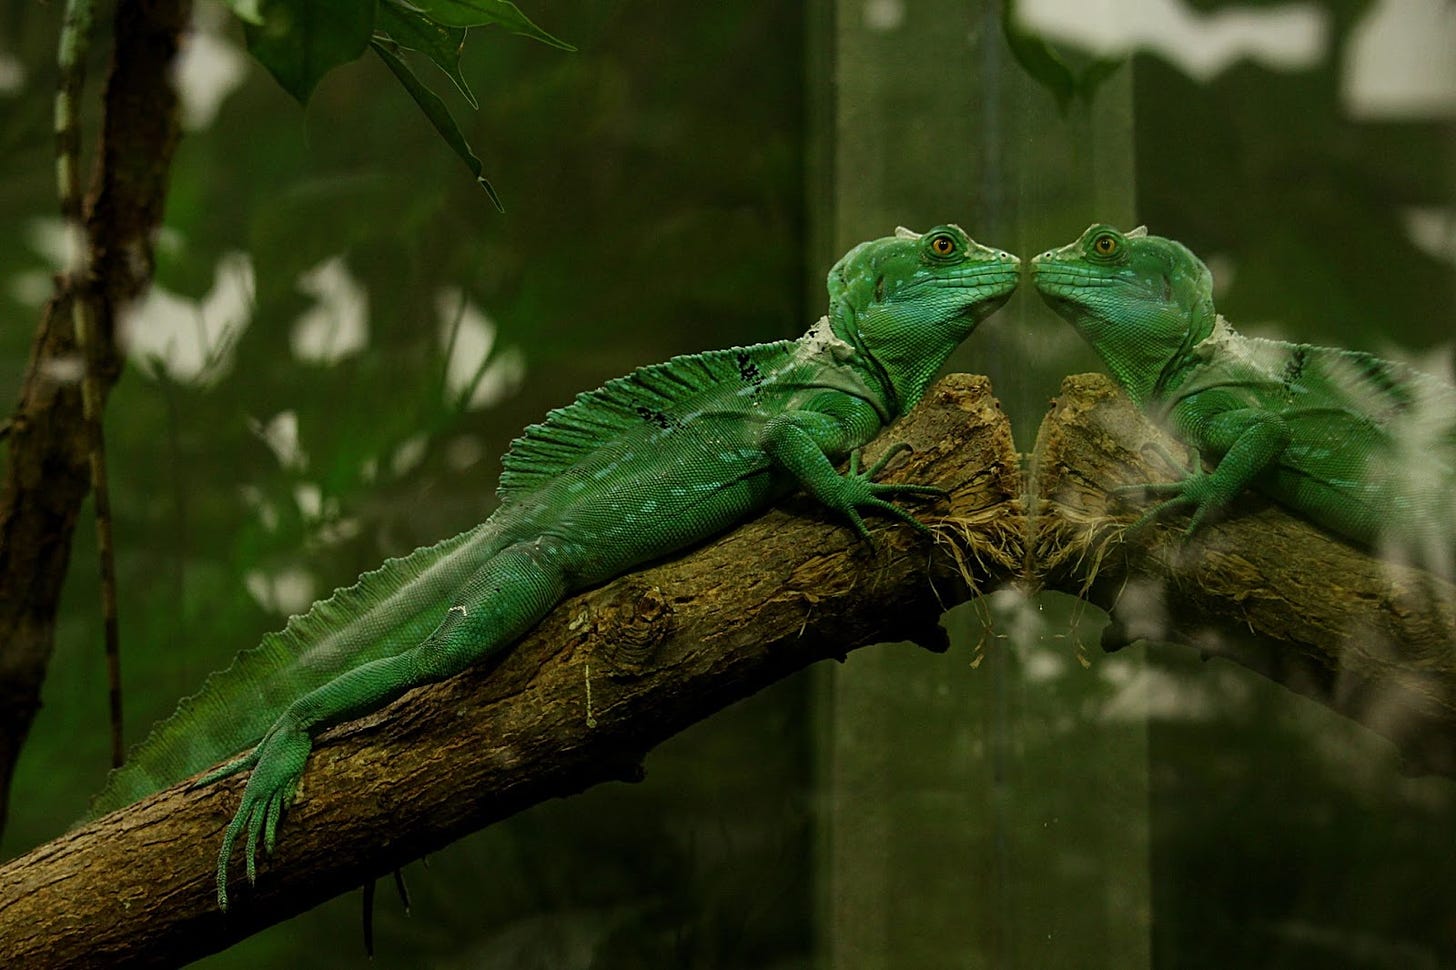 Lizard scaling up a branch